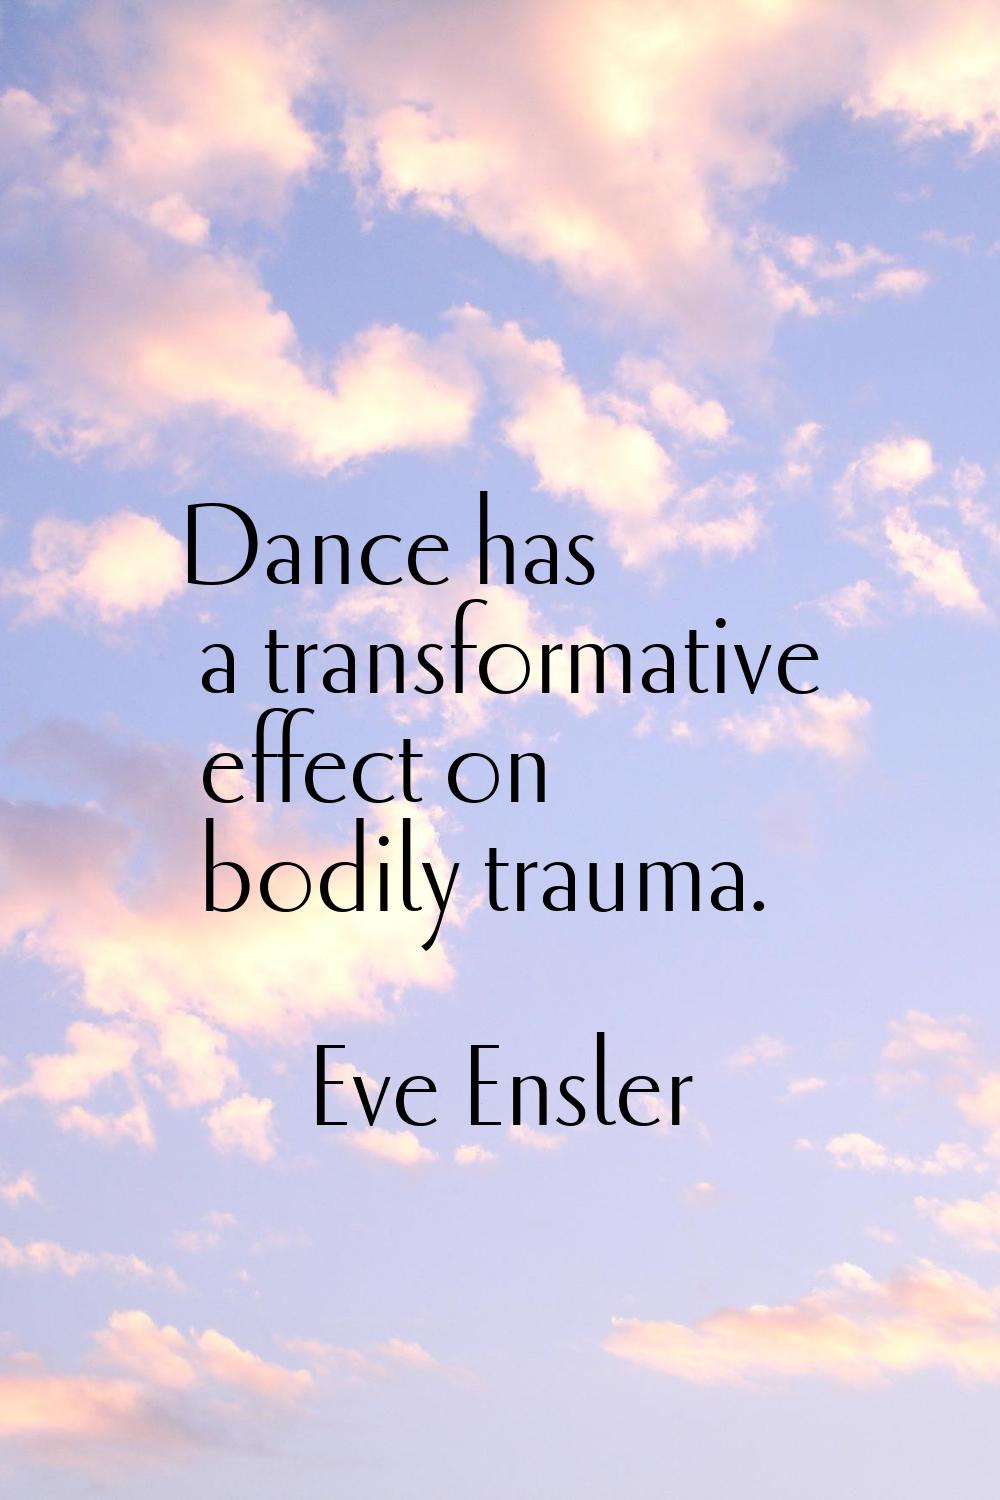 Dance has a transformative effect on bodily trauma.